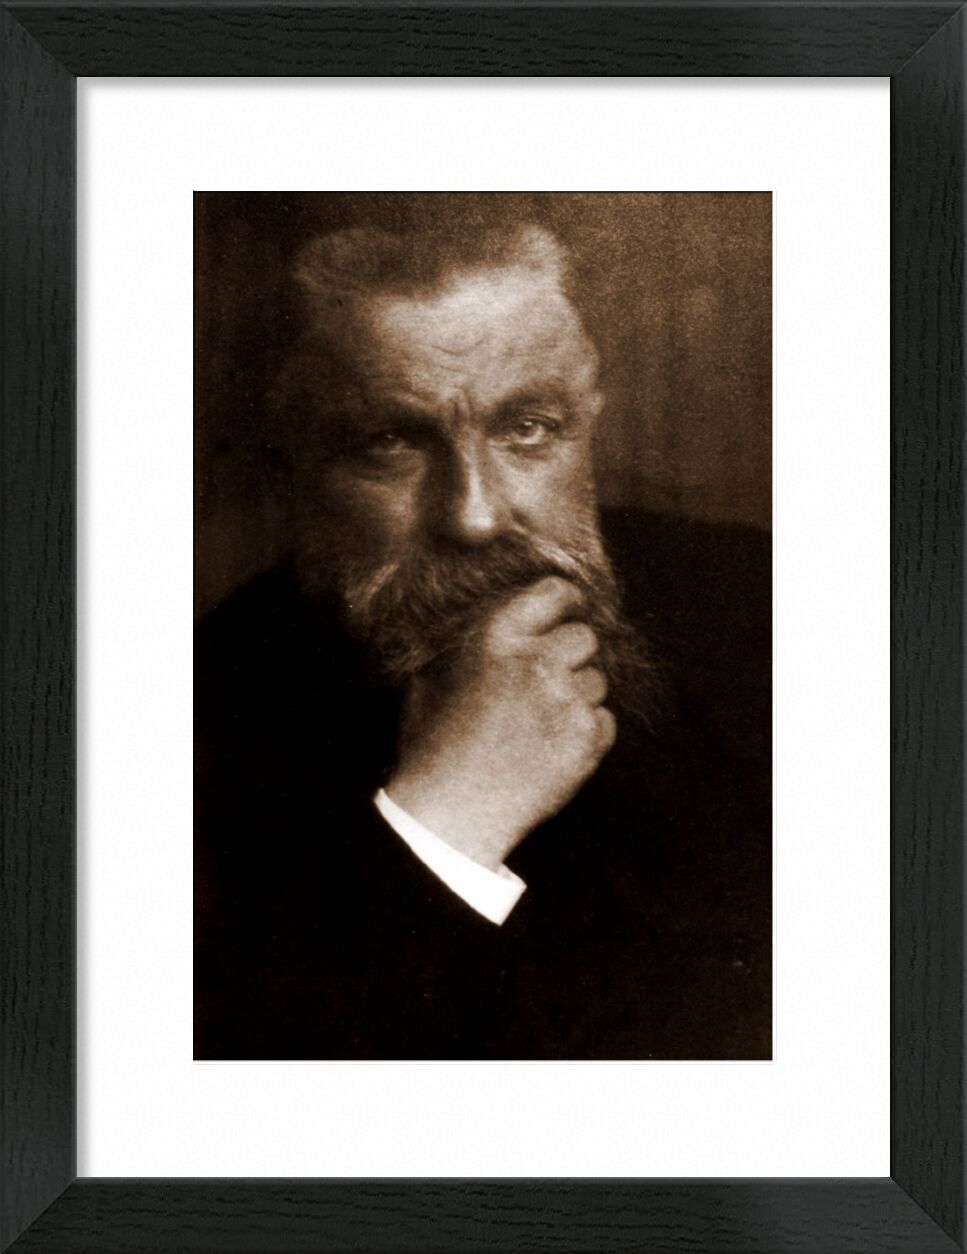 Auguste Rodin - Edward Steichen 1902 von Bildende Kunst, Prodi Art, Foto, altes Foto, edward steichen, Rodin, Auguste Rodin, Bart, Foto von Kunst